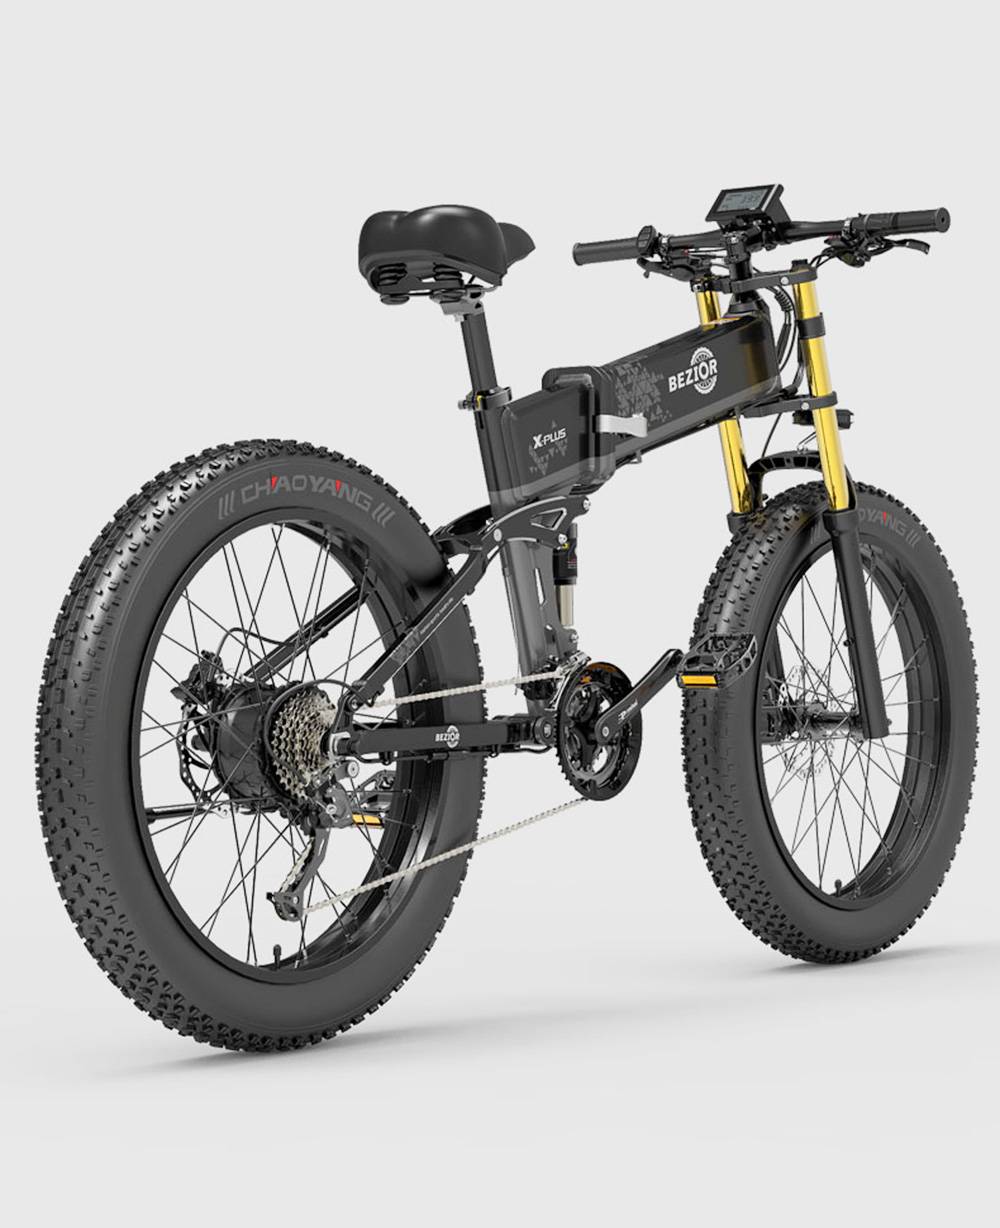 BEZIOR X-PLUS Electric Bike 1500W Motor 48V 17.5Ah Battery 26*4.0 Pneumatiky Horský bicykel 40 km/h Maximálna rýchlosť 200 kg záťaže - červený